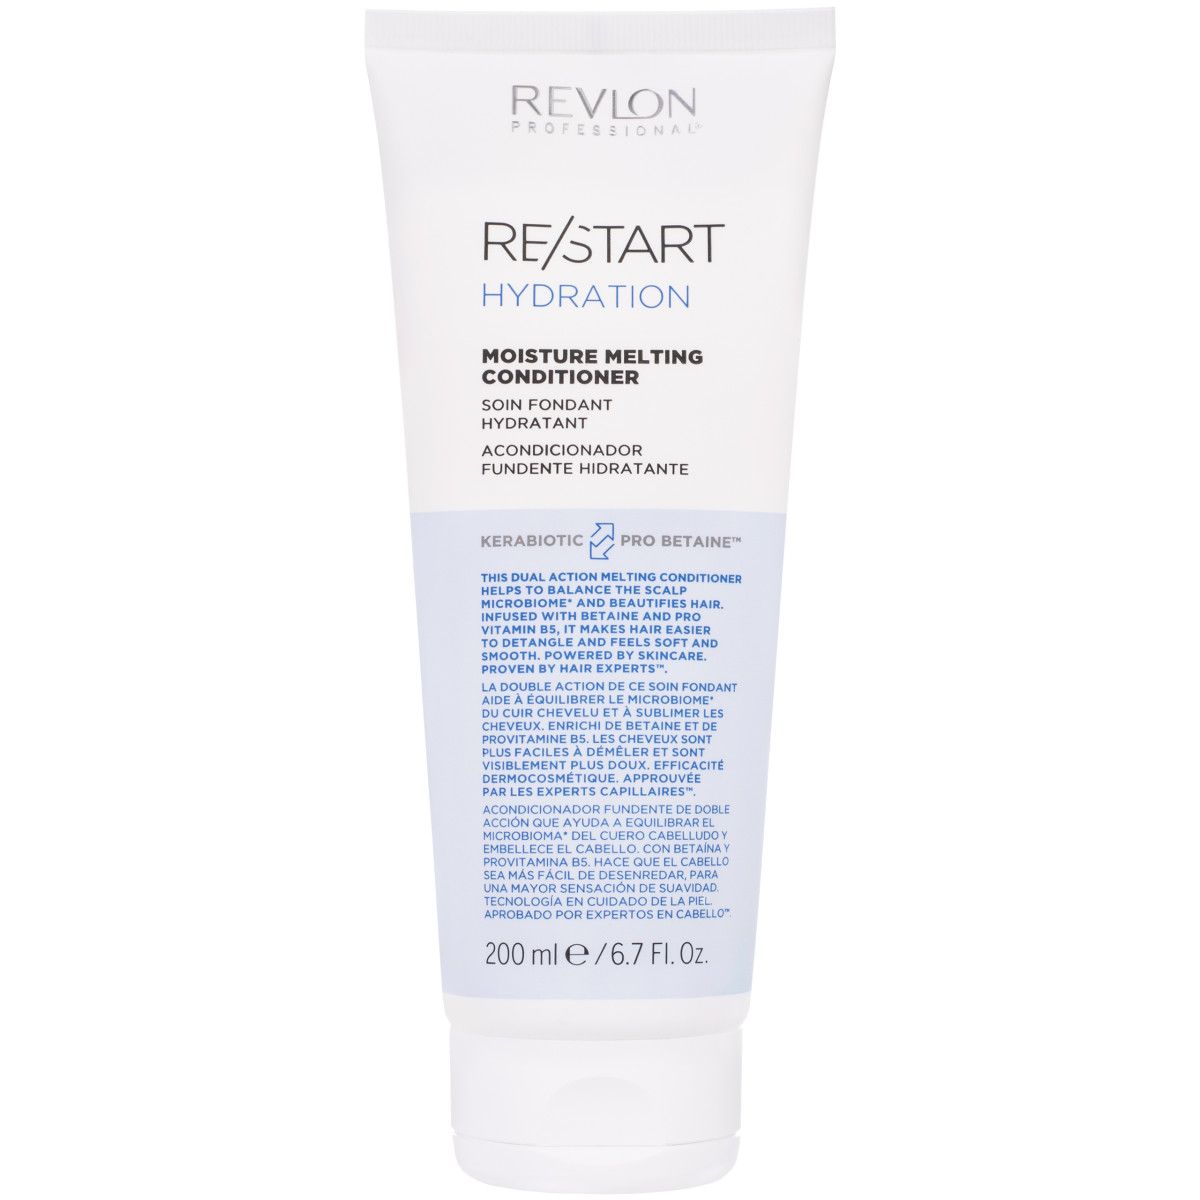 Hydration do Revlon 50ml Anti-Frizz włosów RE/START serum nawilżające